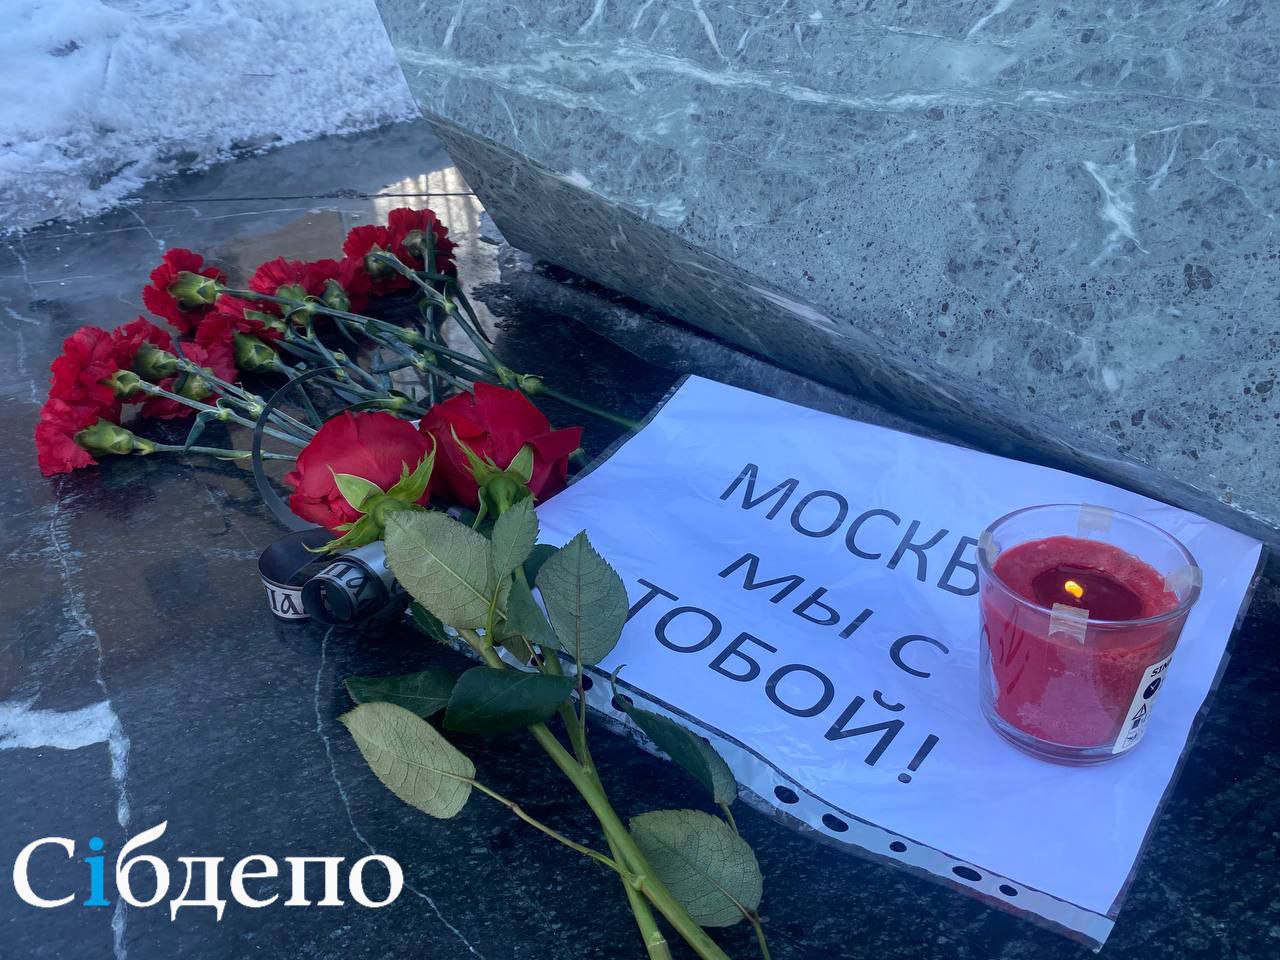 Кузбассовцы скорбят: жители региона возложили цветы в память о погибших в страшном теракте